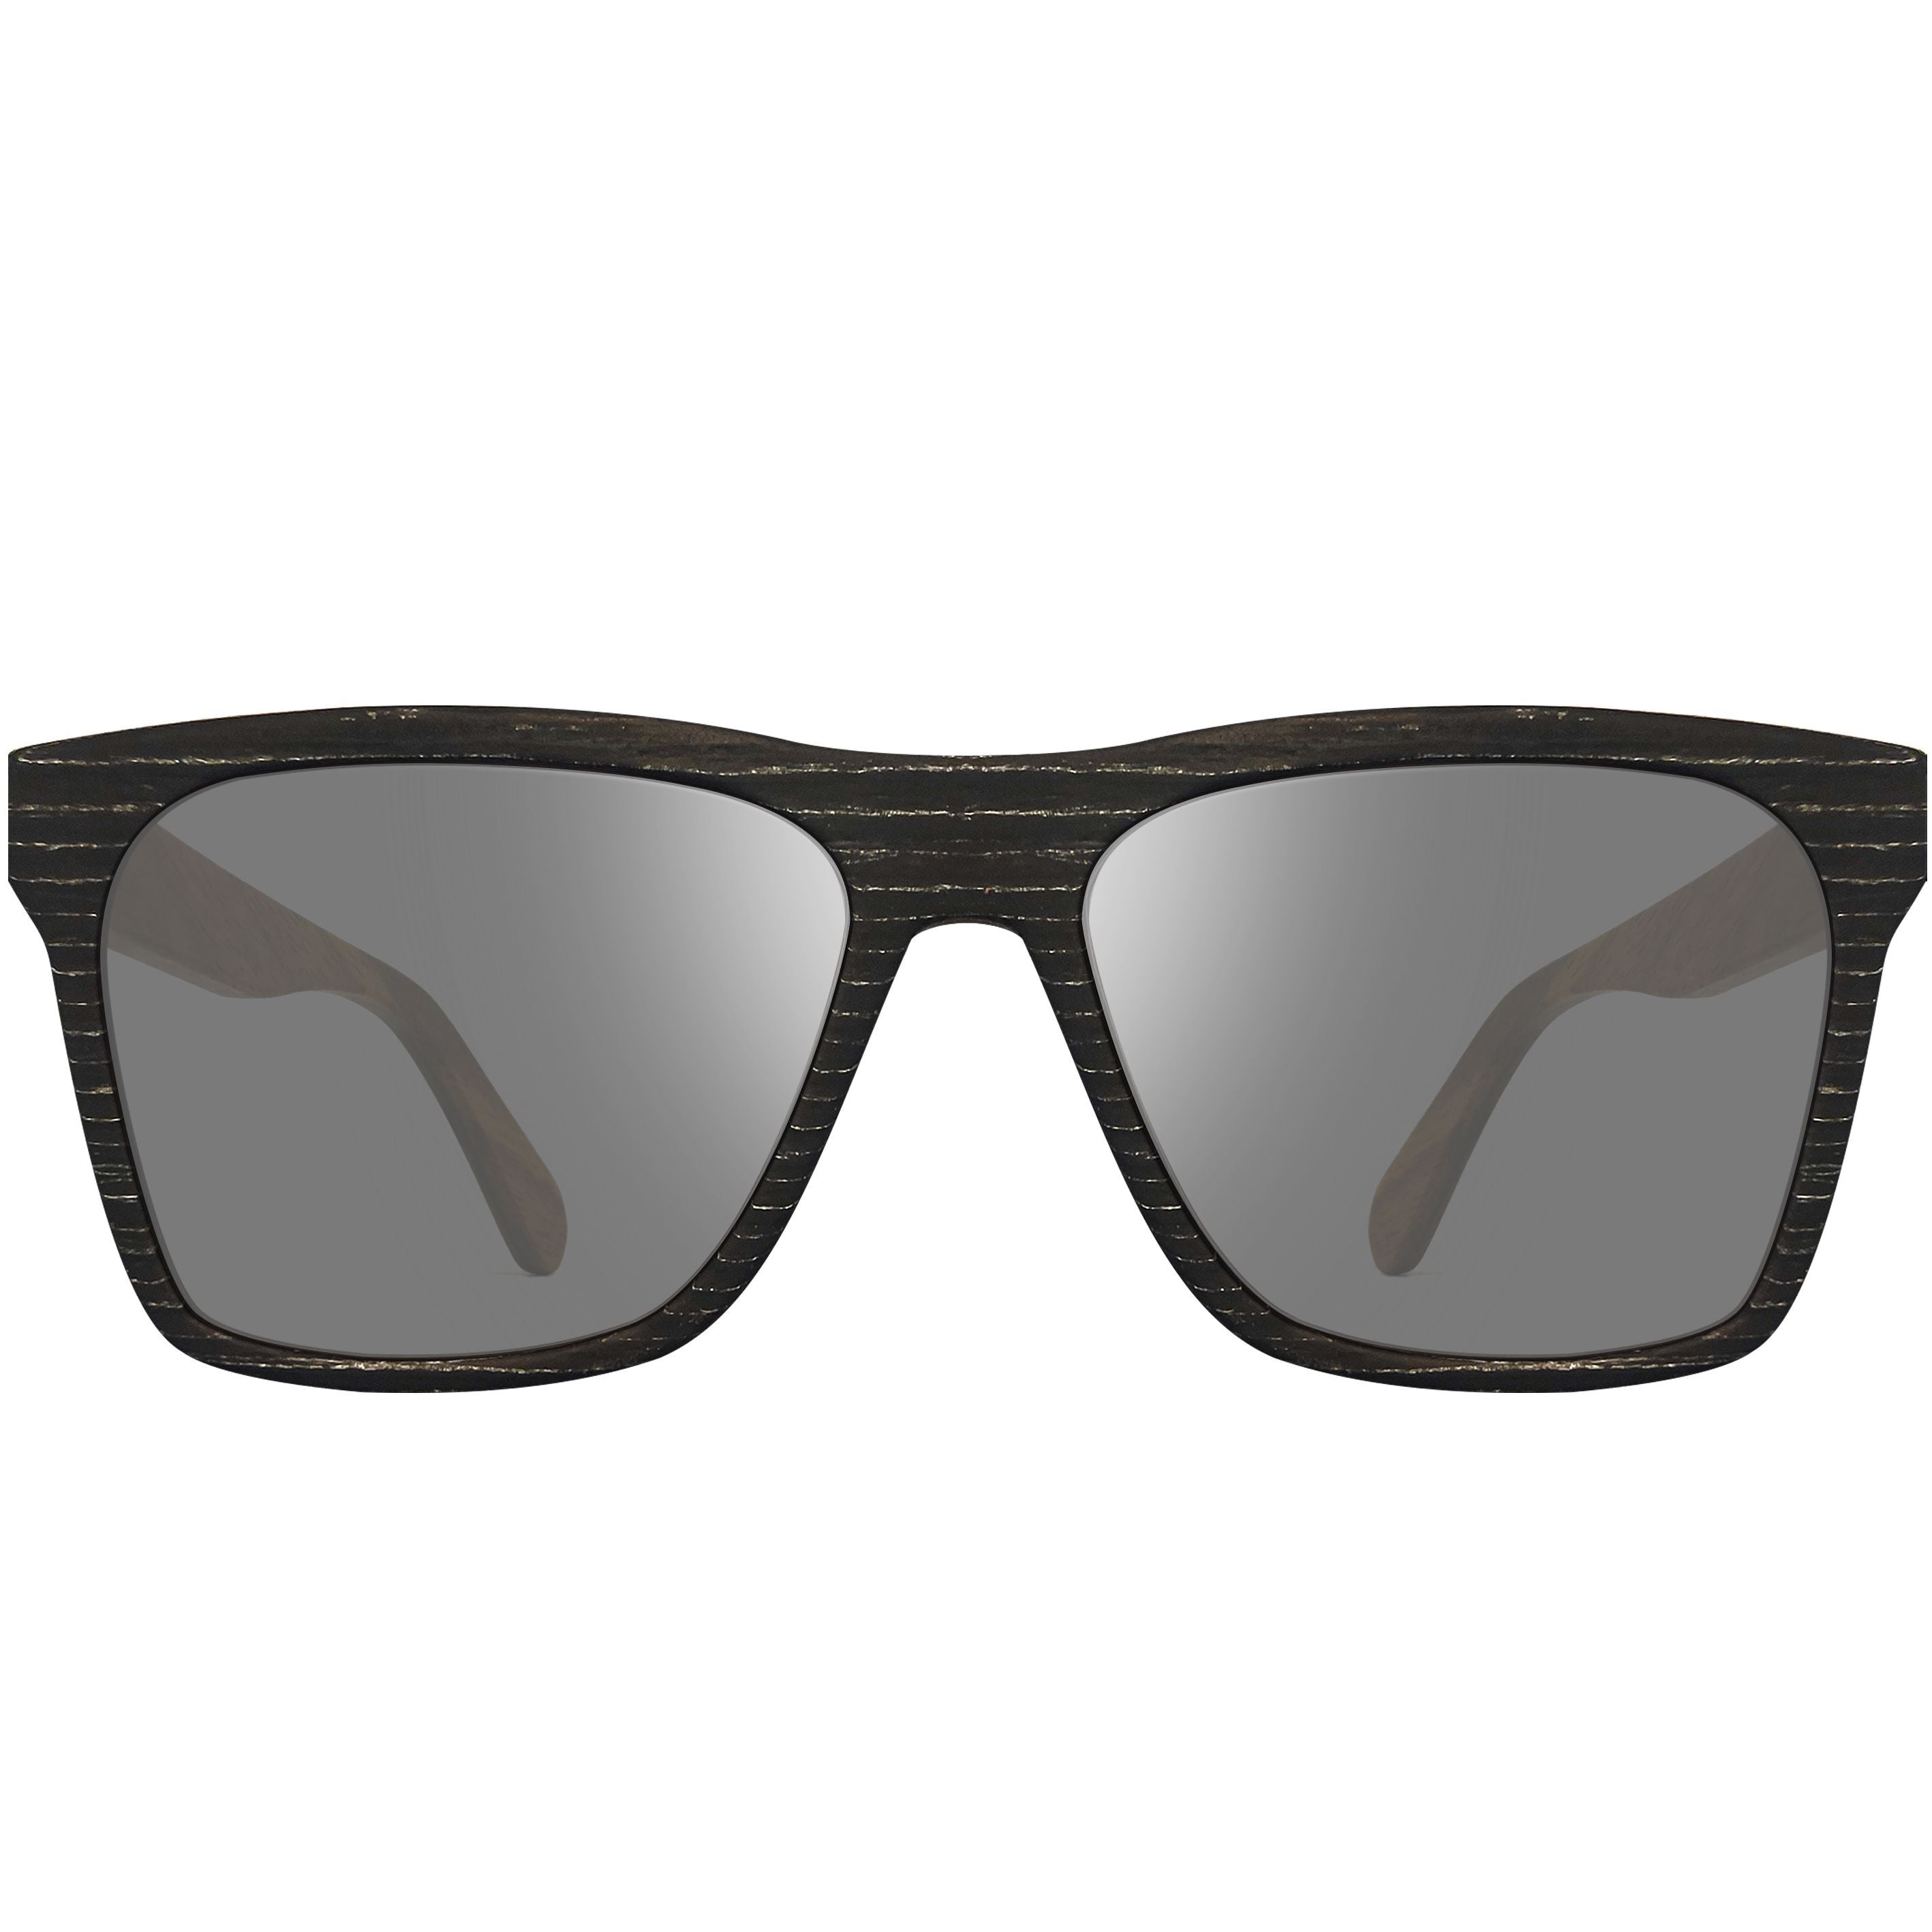 Zylo SEAROBIN BLACK SILVER sunglasses